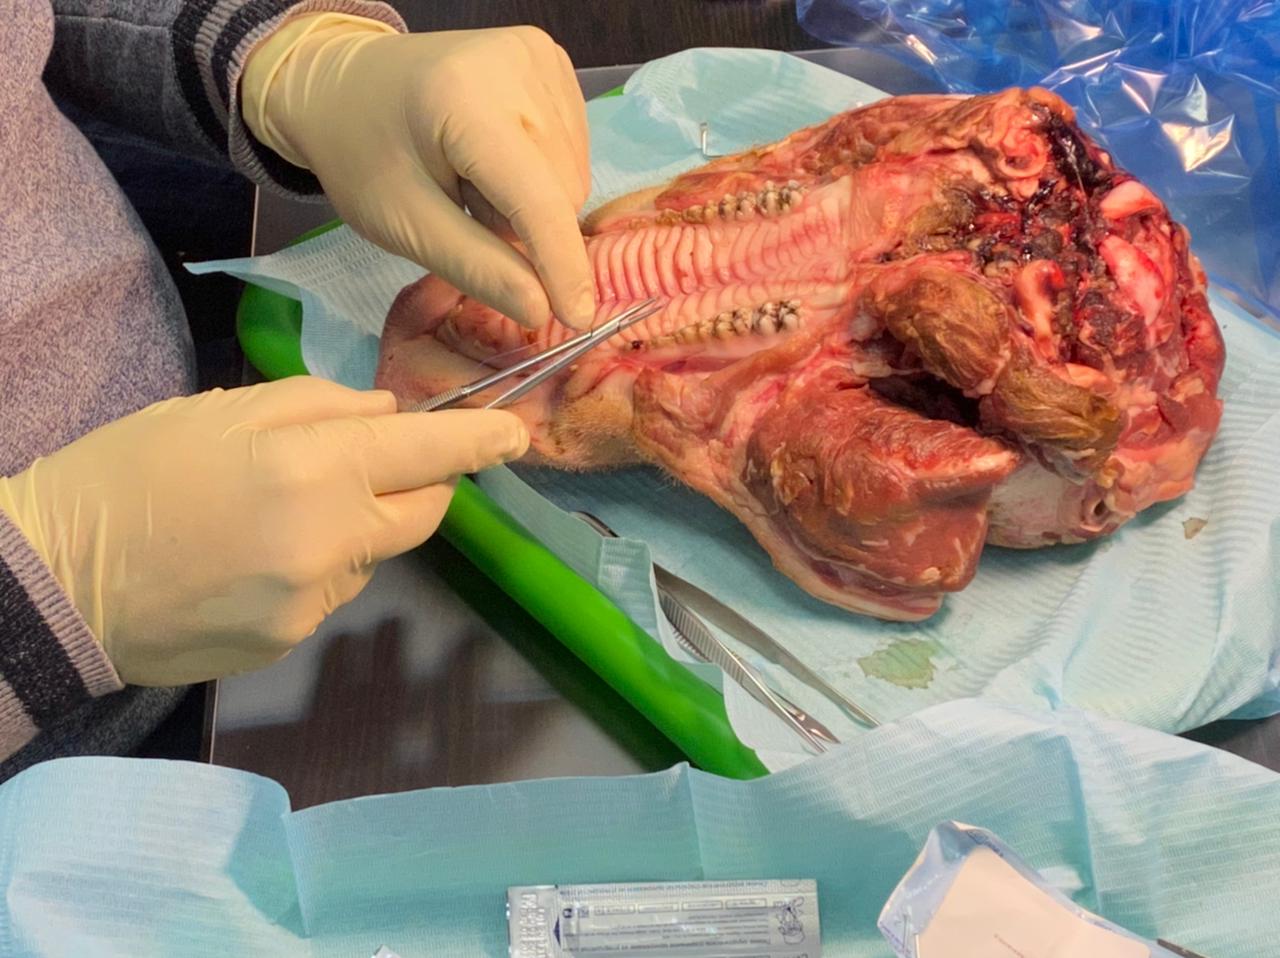 Дентальная имплантация с одновременной пластикой мягких тканей в сложных клинических случаях. 3 апреля 2021